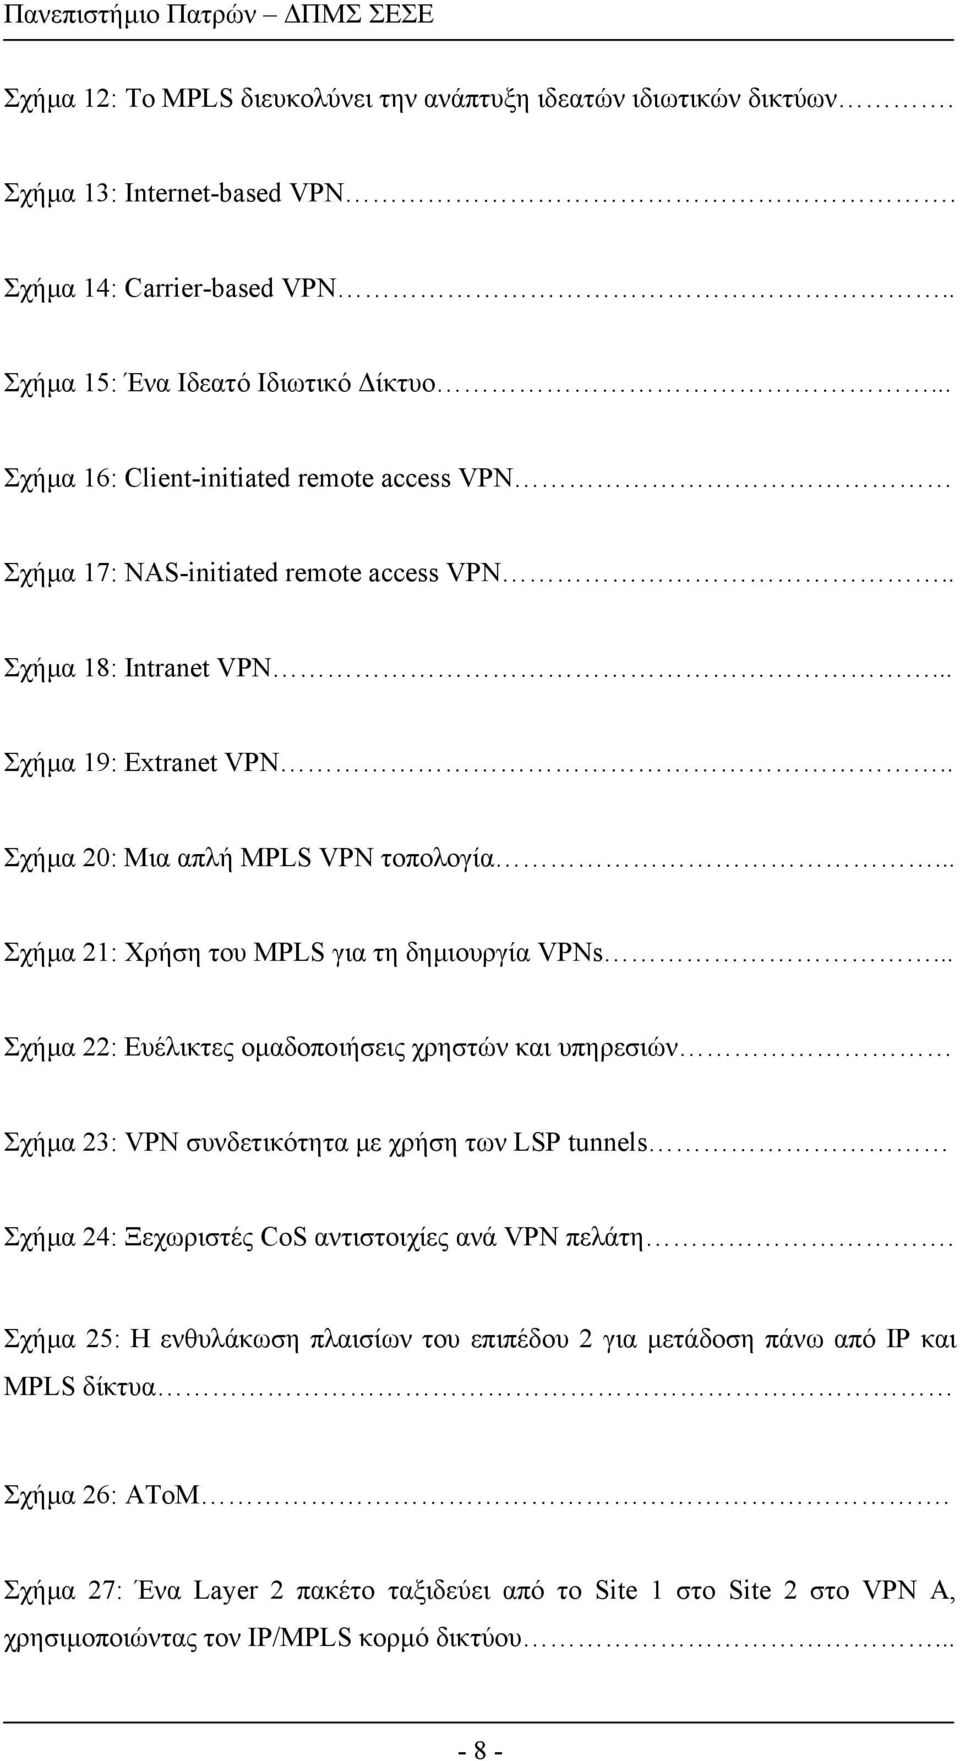 .. Σχήµα 21: Χρήση του MPLS για τη δηµιουργία VPNs.